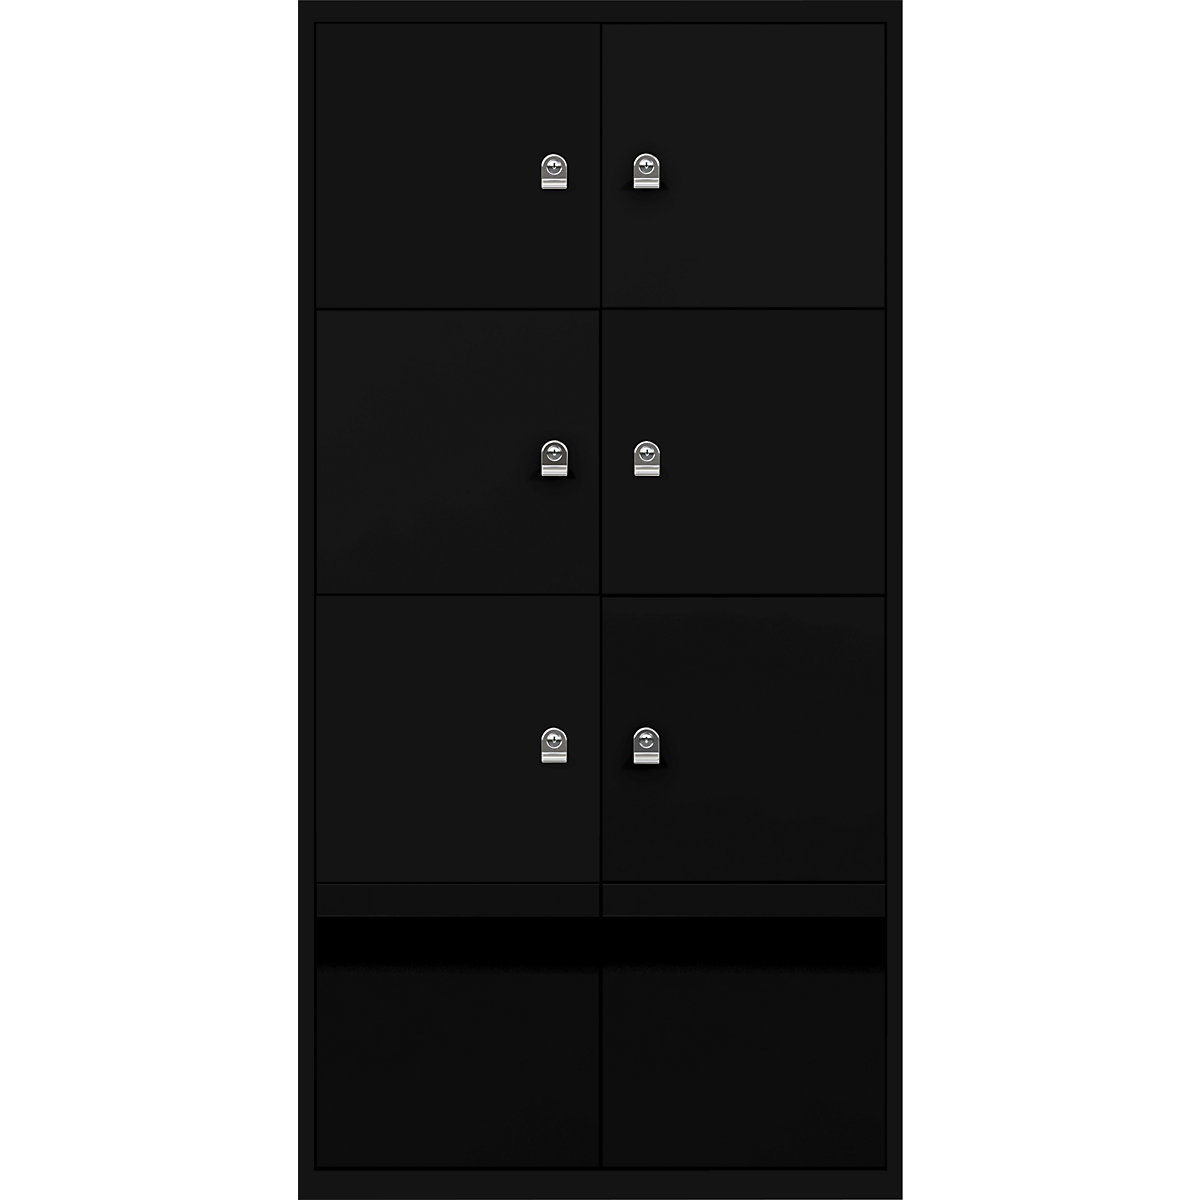 Omara s predelki z zaklepanjem LateralFile™ – BISLEY, 6 predelkov z zaklepanjem in 2 predala, višina po 375 mm, črne barve-12